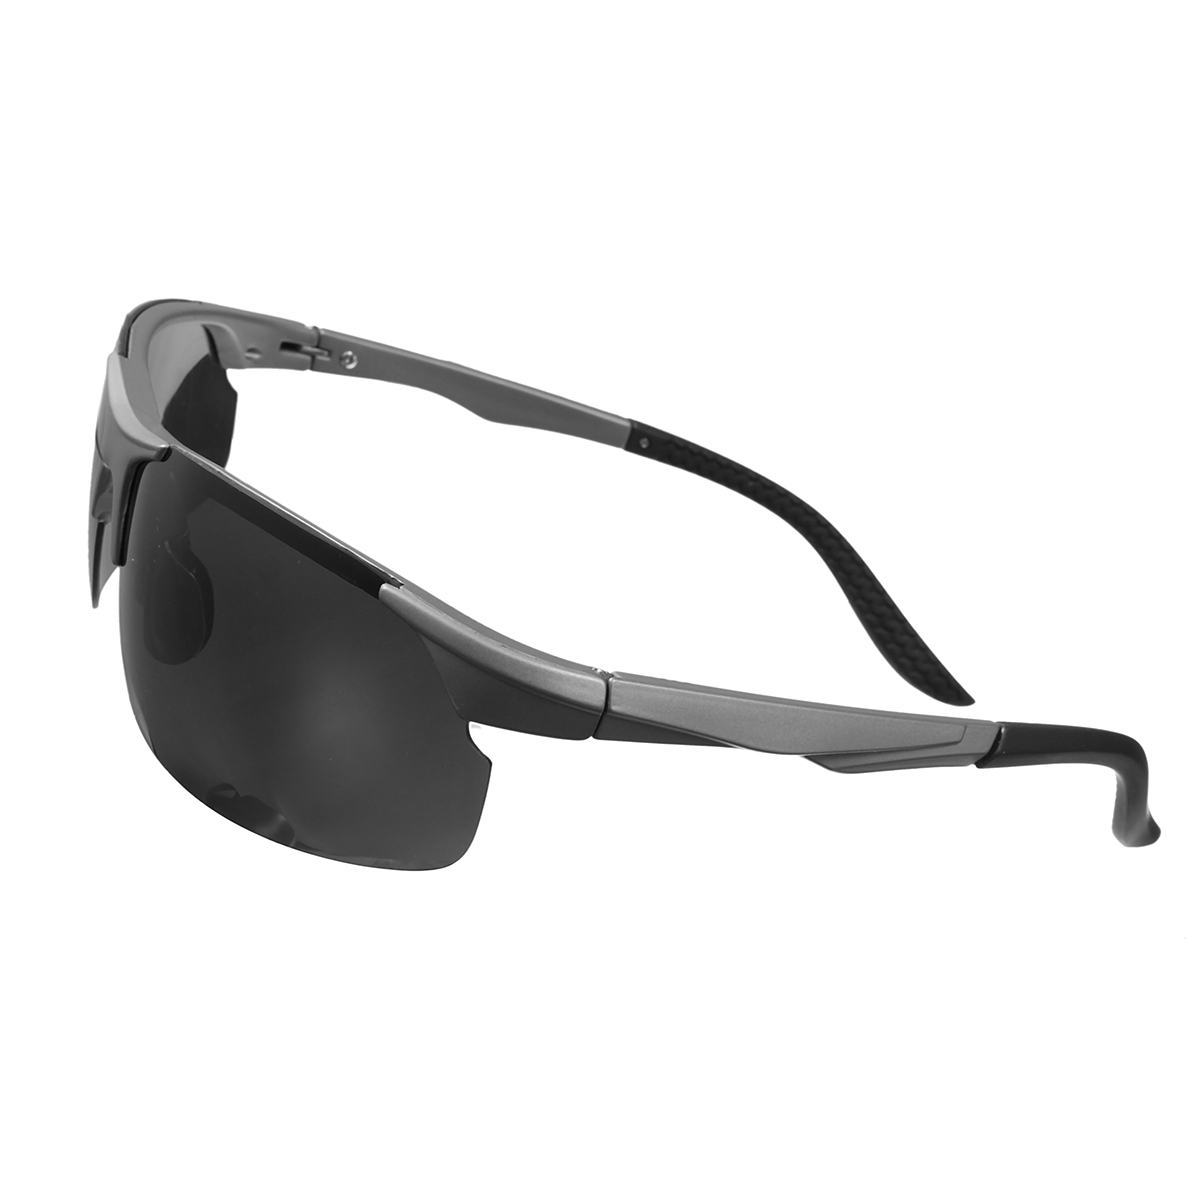 OUTERDO Ультралёгкий TR90 поляризованный свет очки ночного видения очки очки с картой Test Case